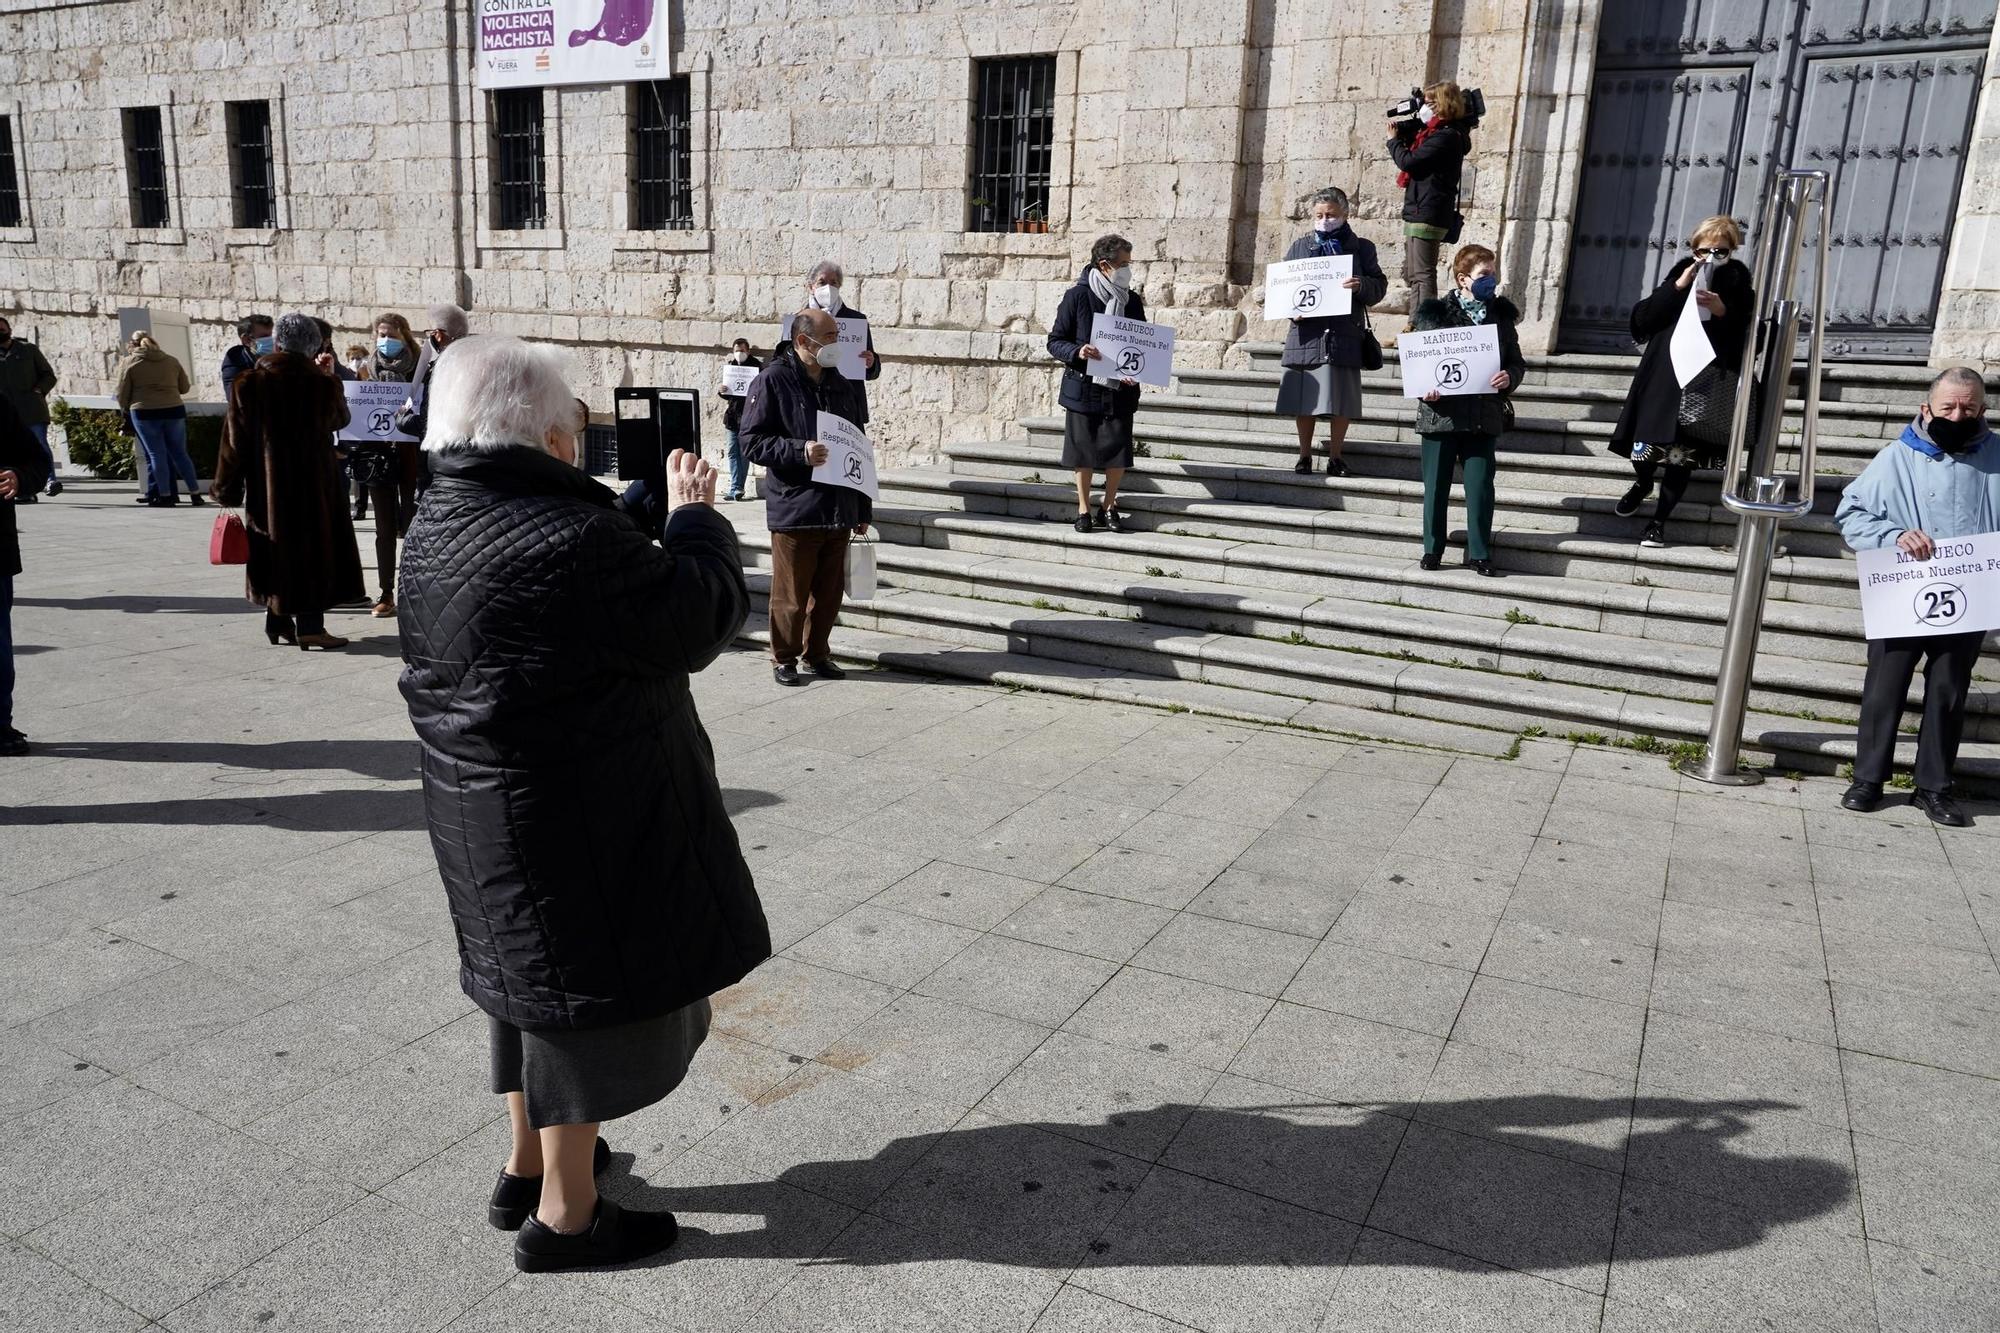 Concentración en Valladolid en protesta por la limitación de aforo en actos religiosos